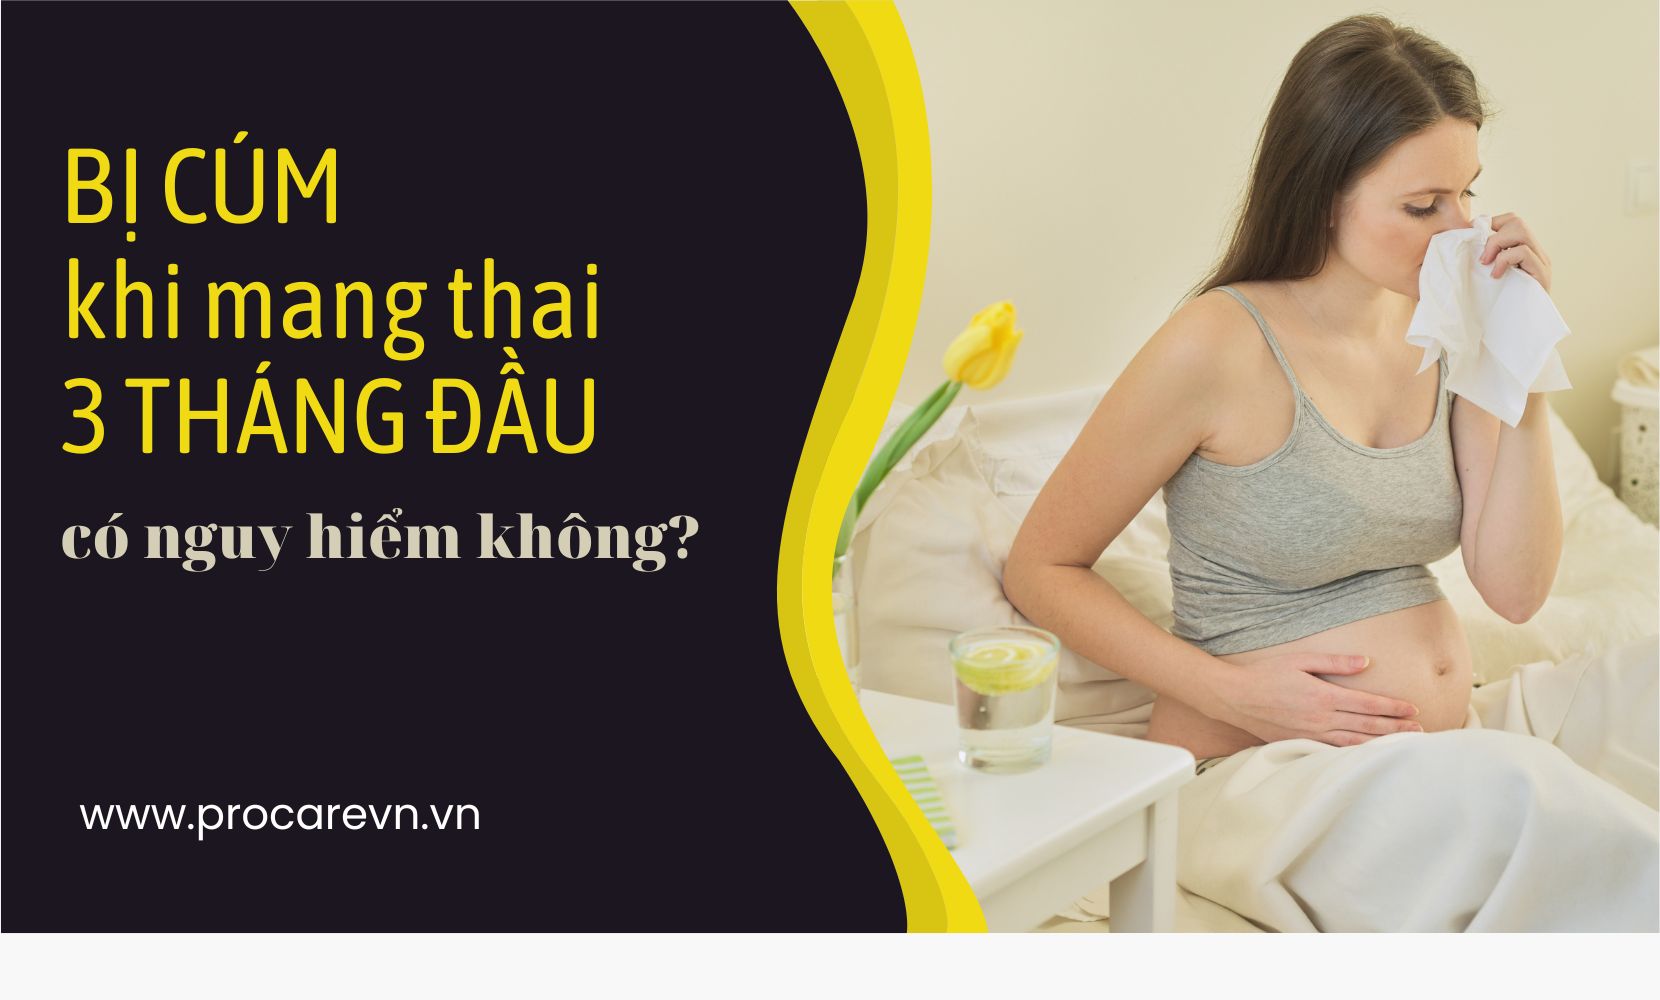 Mang thai 3 tháng đầu bị cúm có nguy hiểm không?